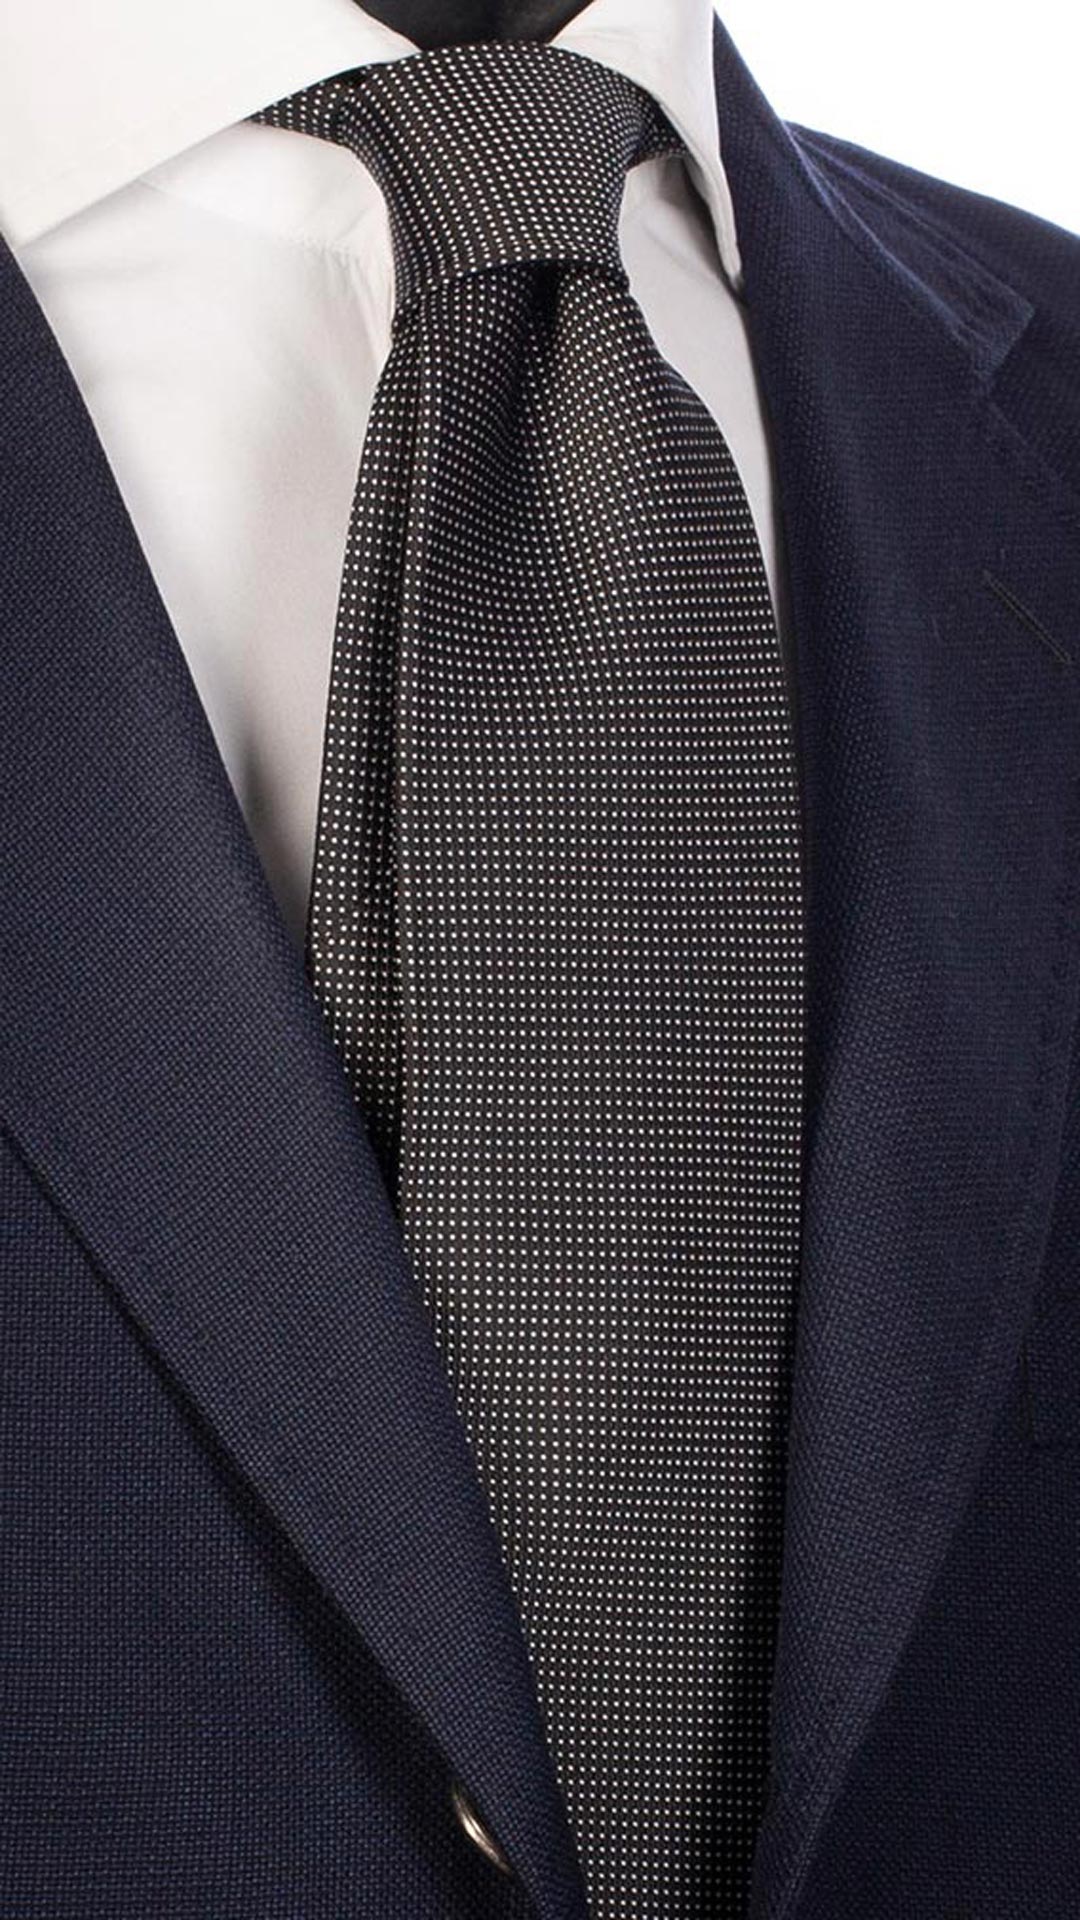 Cravatta da Cerimonia di Seta Nera Punto a Spillo Bianco CY2499 made in Italy Graffeo Cravatte